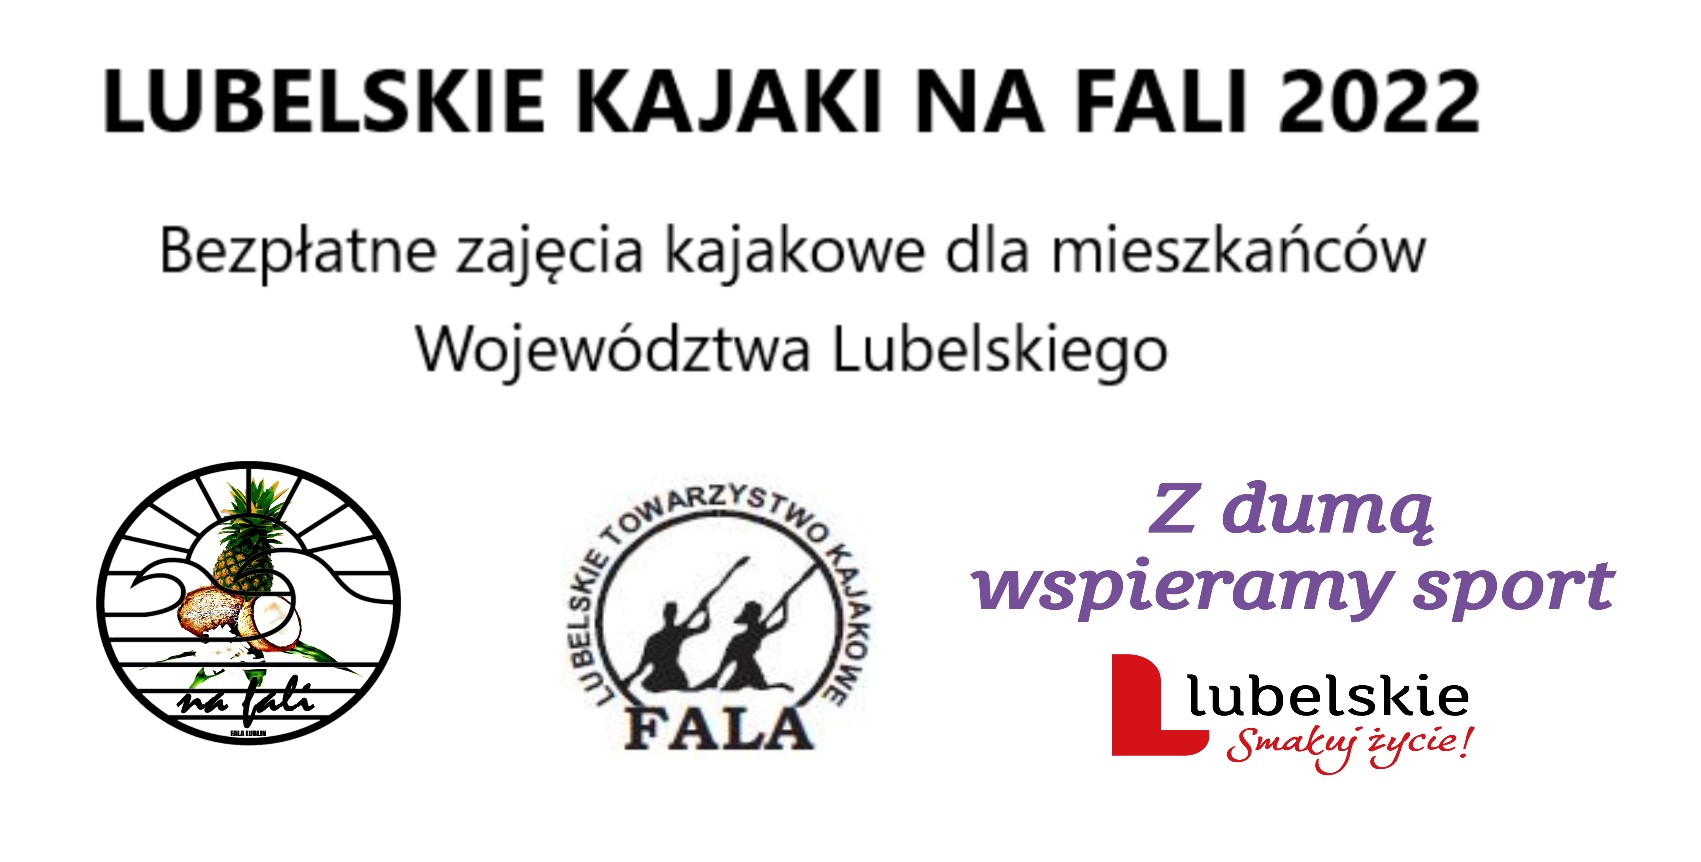 Lubelskie Kajaki na fali 2022 logo